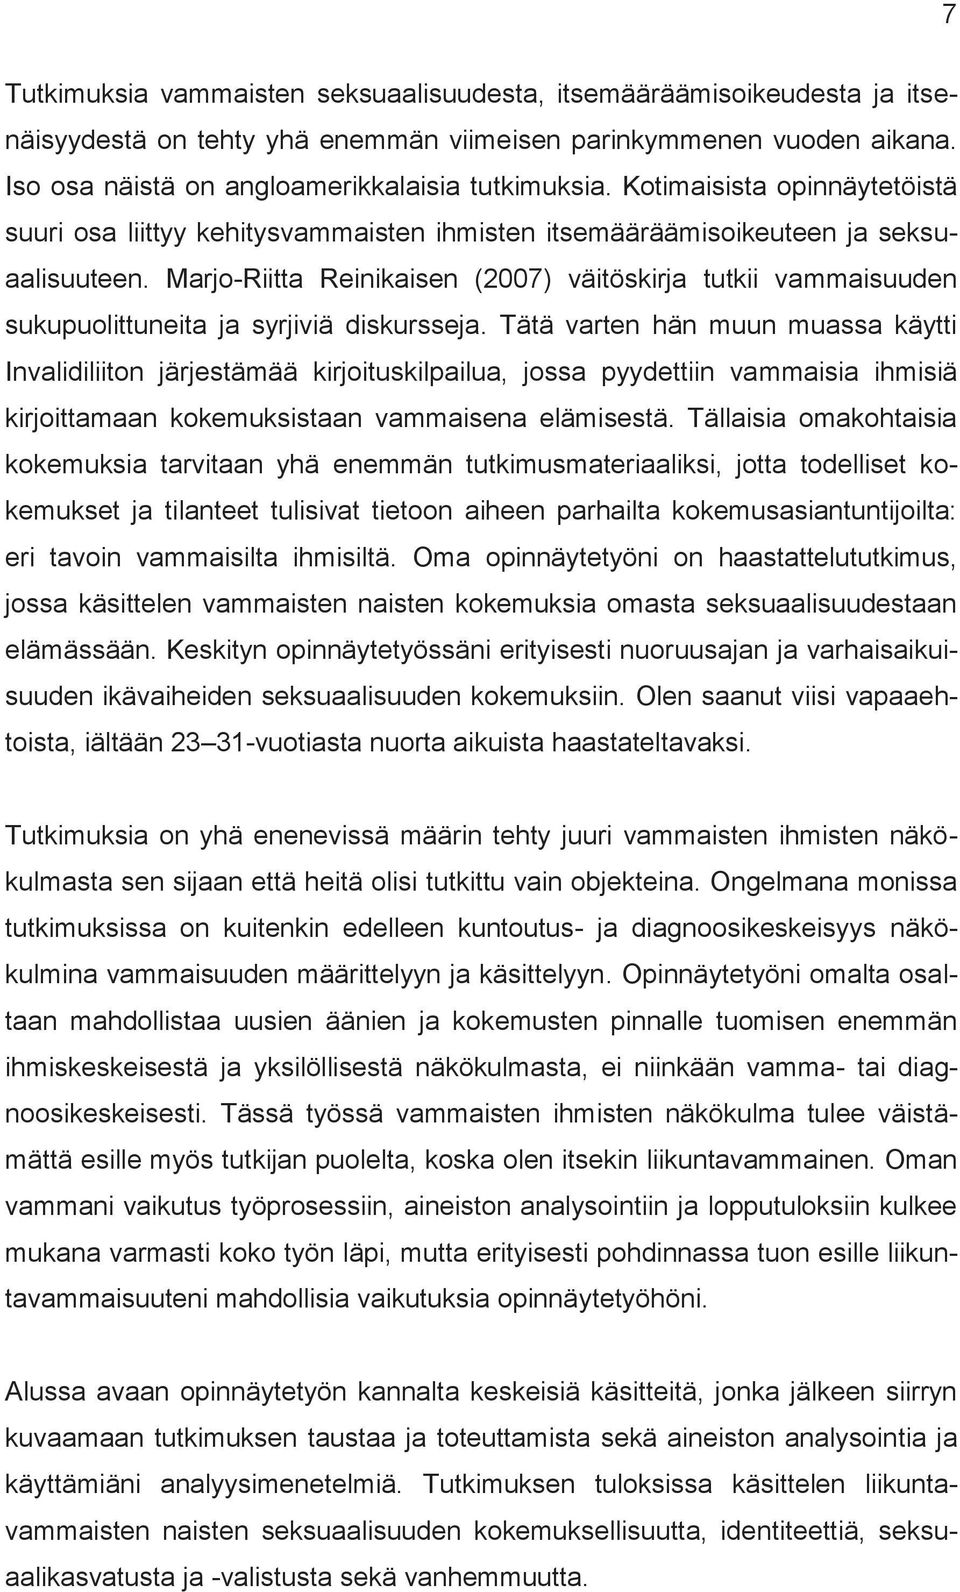 Marjo-Riitta Reinikaisen (2007) väitöskirja tutkii vammaisuuden sukupuolittuneita ja syrjiviä diskursseja.